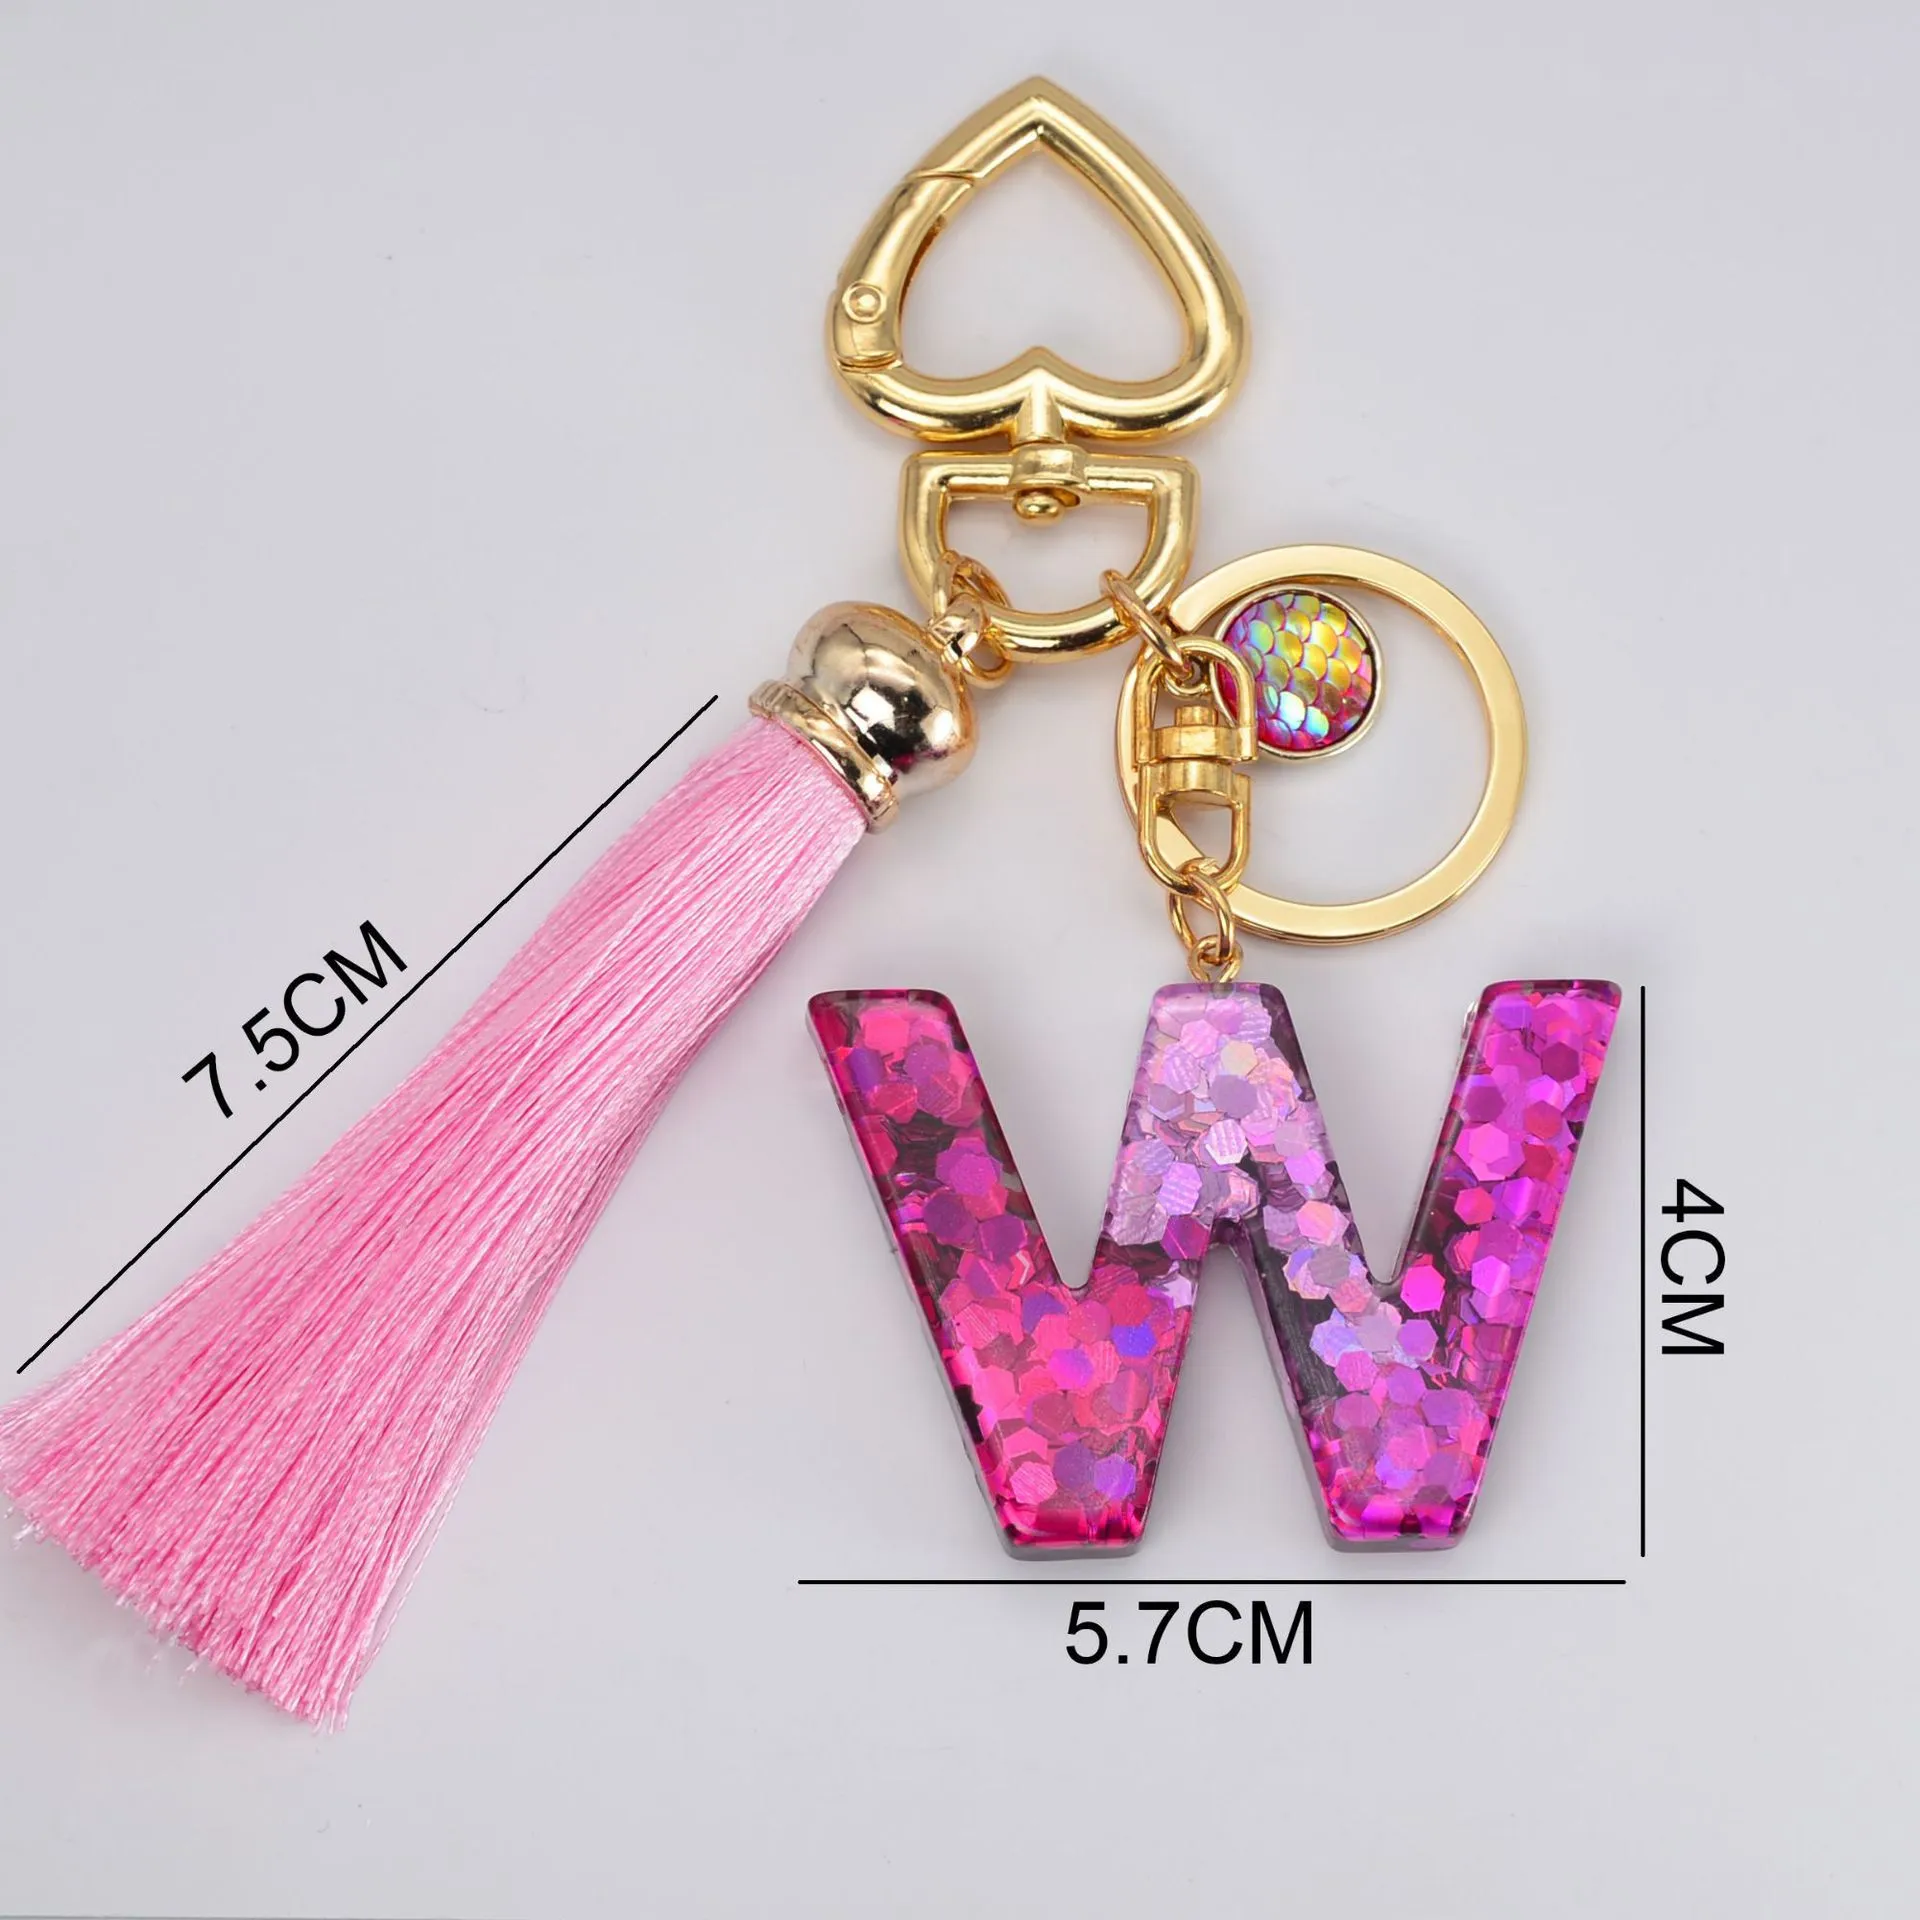 Mode lettre initiale porte-clés gland acrylique porte-clés A-Z lettre porte-clés charme sac Couple sac cadeau DF131